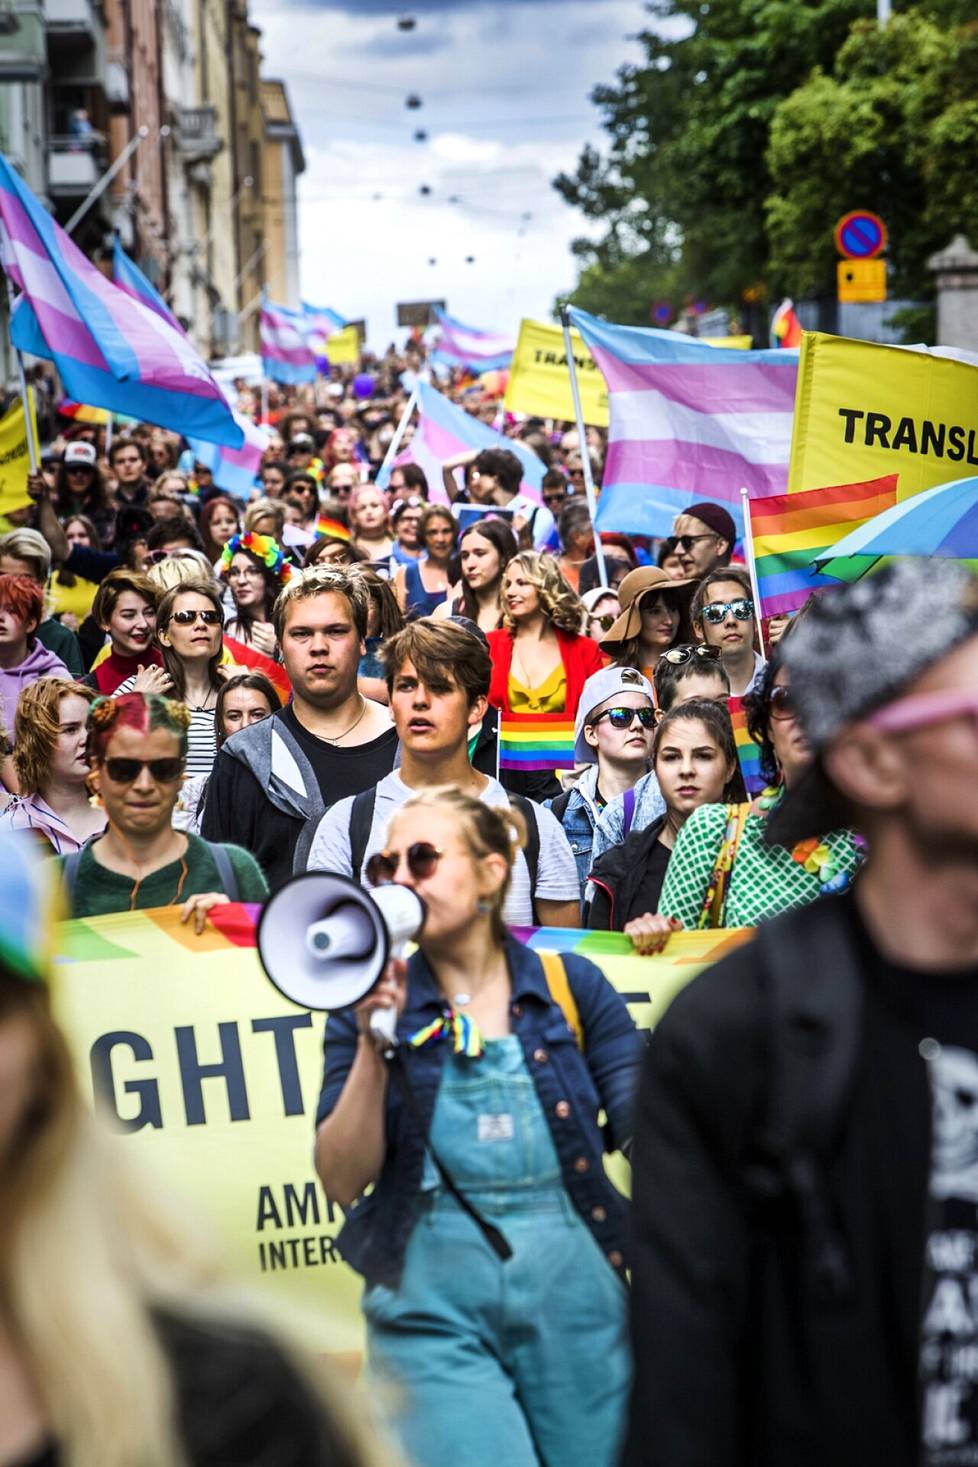 Translain uudistusta on vaadittu viime vuosina näyttävästi muun muassa pride-kulkueissa. 